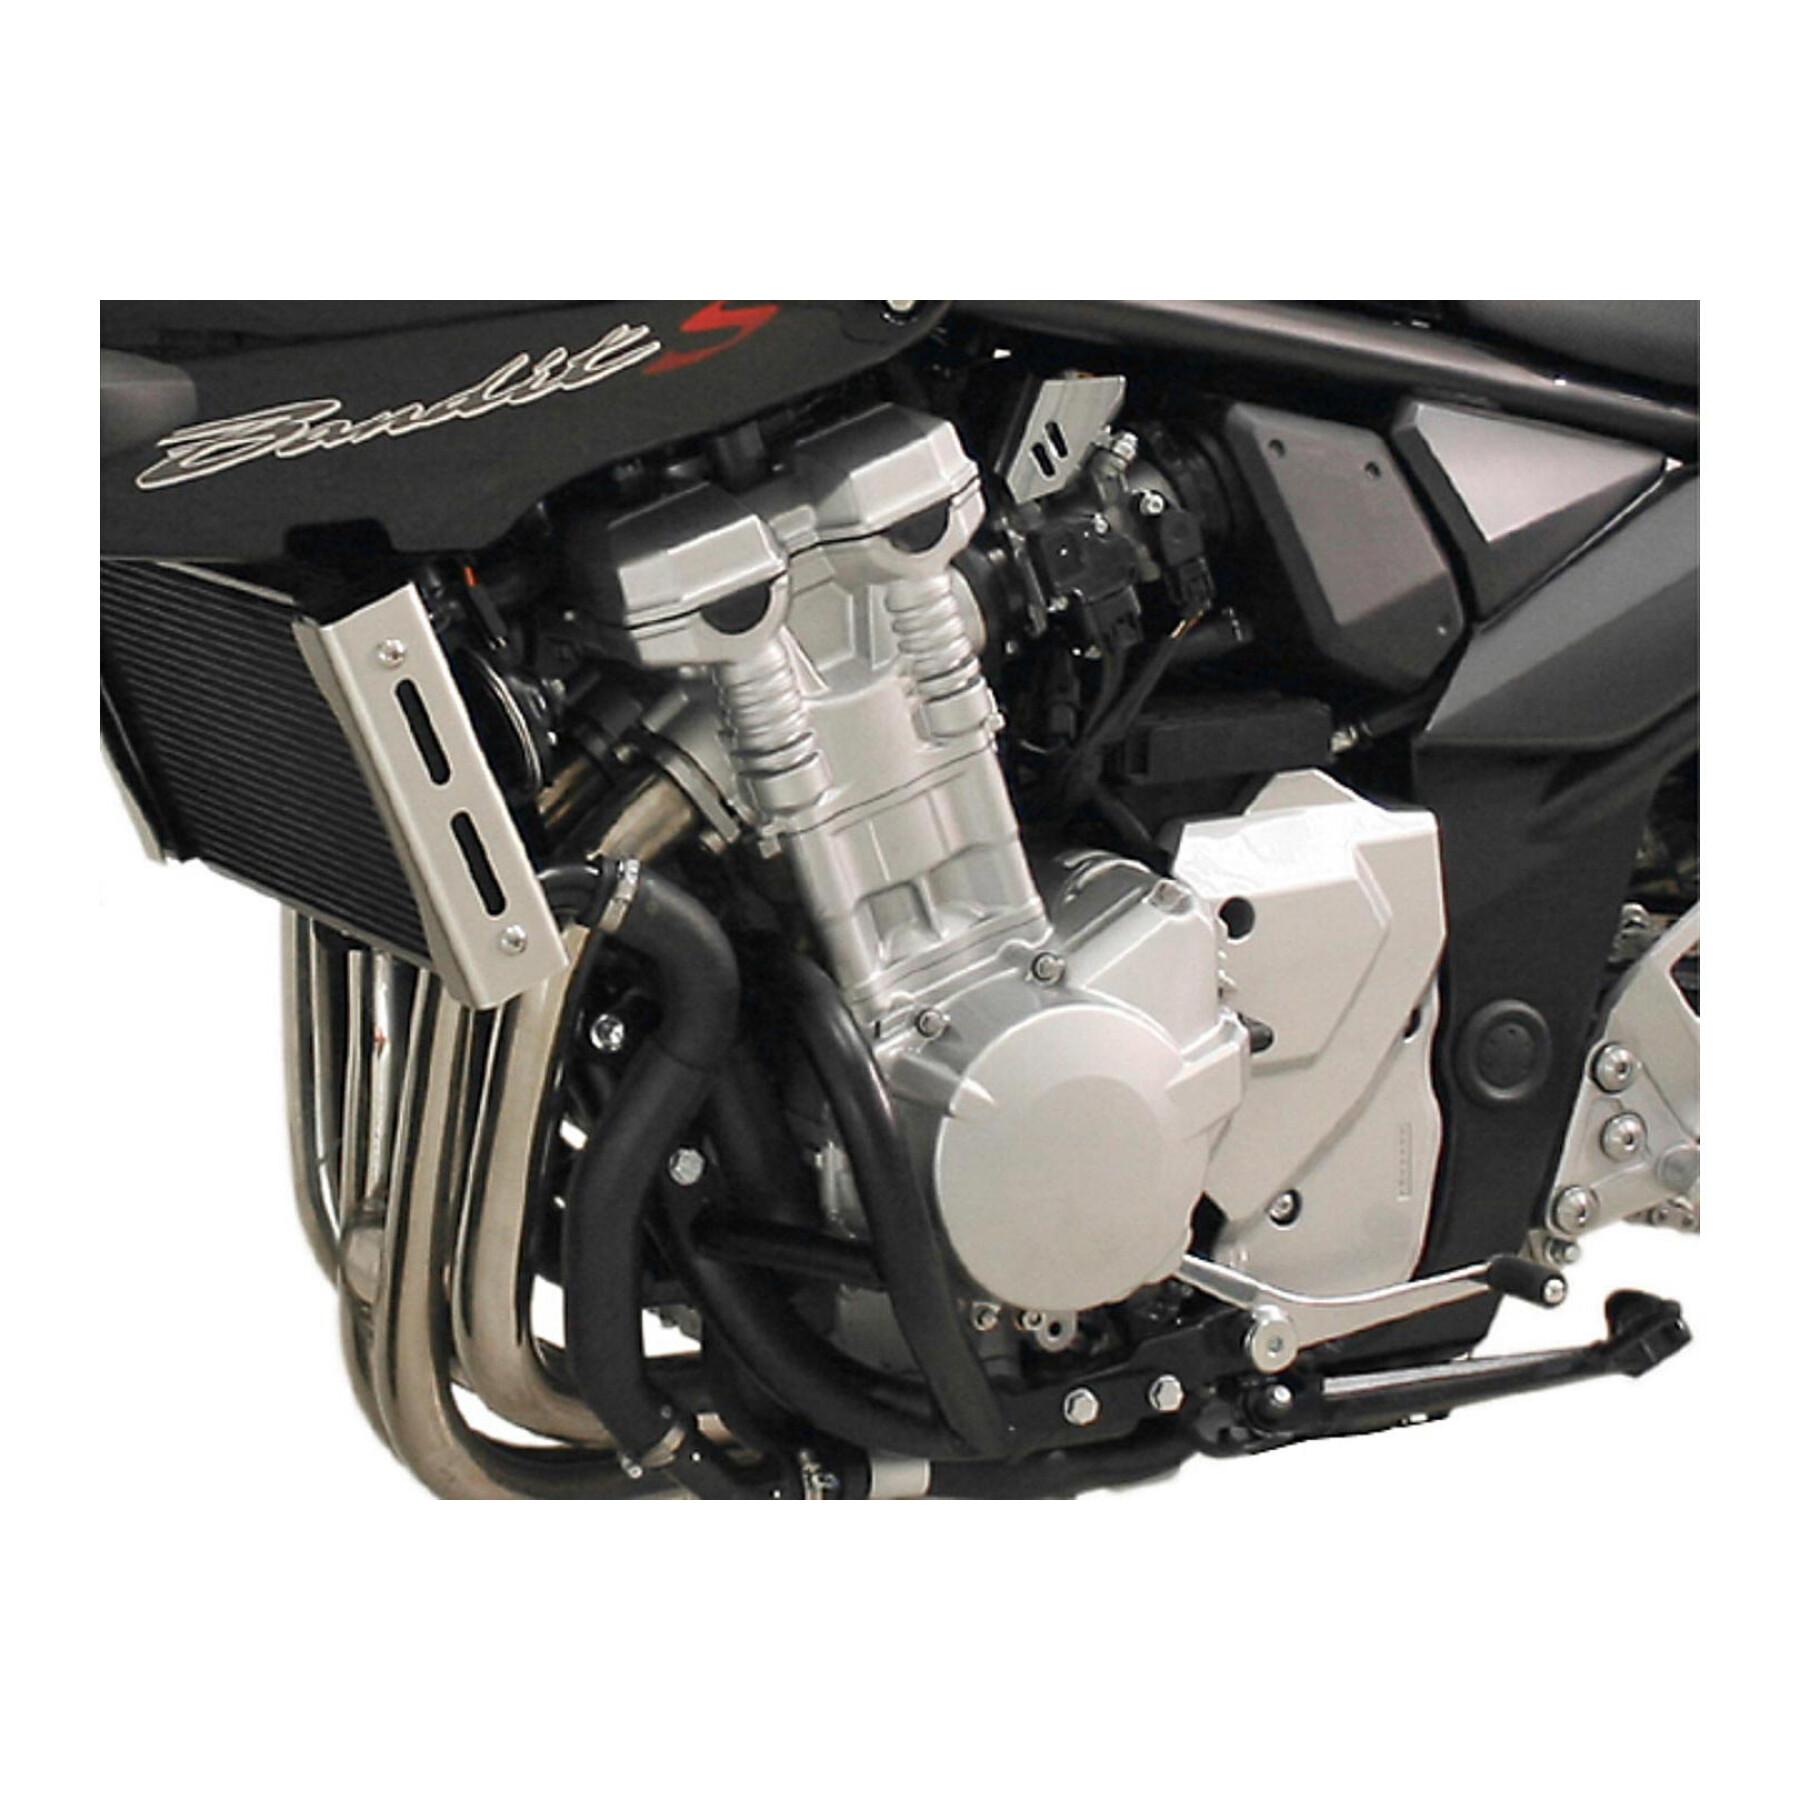 Protezioni per moto Sw-Motech Crashbar Suzuki Gsf 650 Bandit / S (07-)